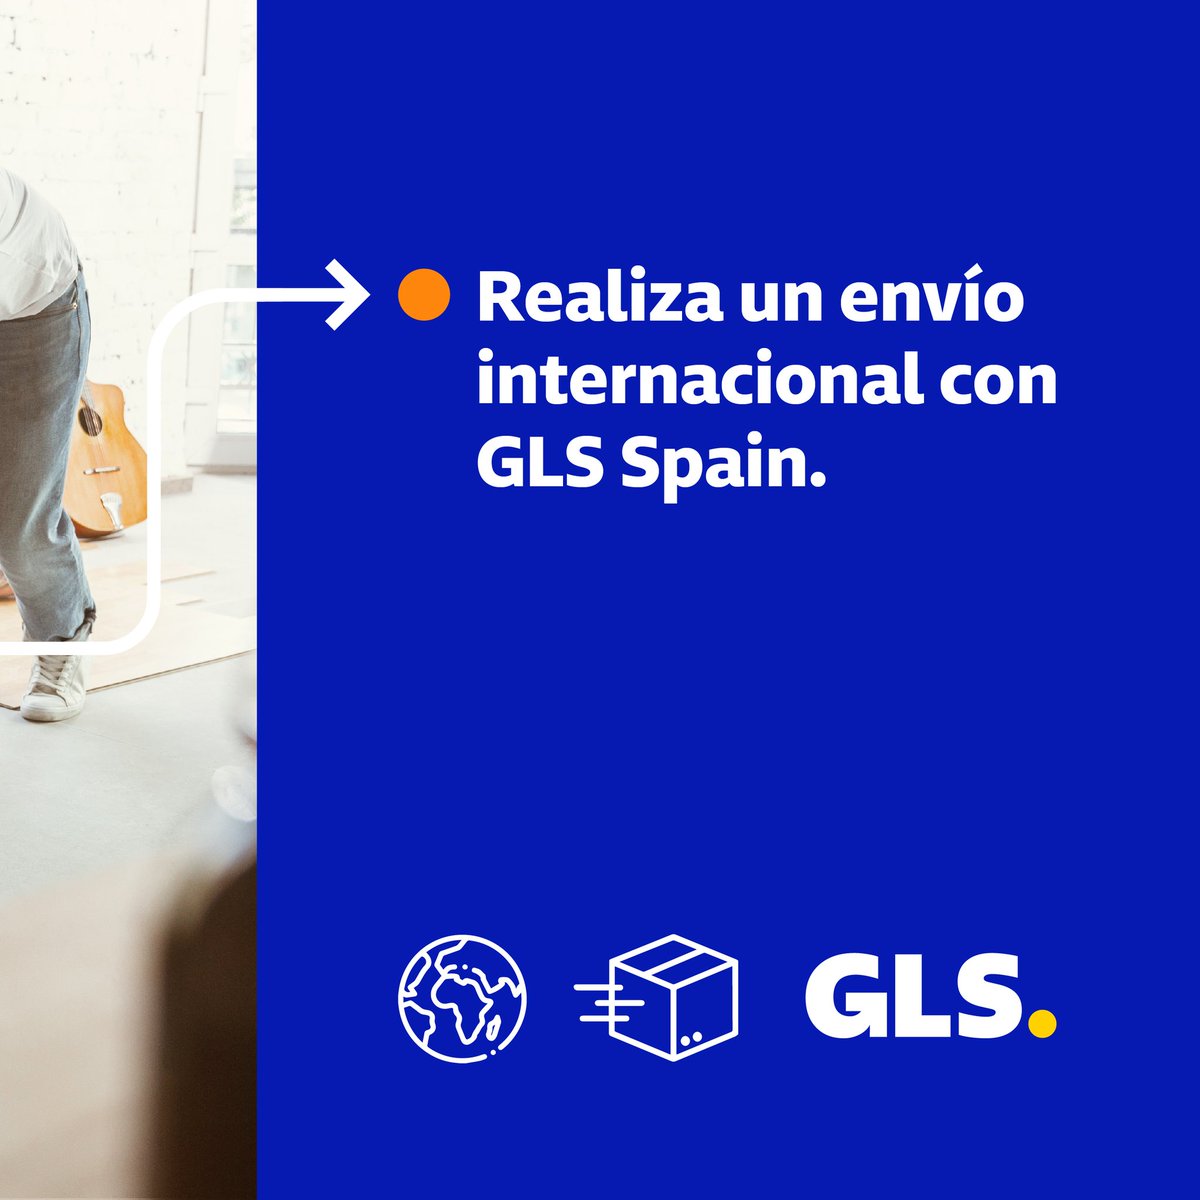 Te acompañamos a cualquier lugar del mundo. Contrata tu envío internacional en nuestra agencia GLS Cervera,  Av. Alt Urgell 11. #GLSSpain #ParcelstoPeople